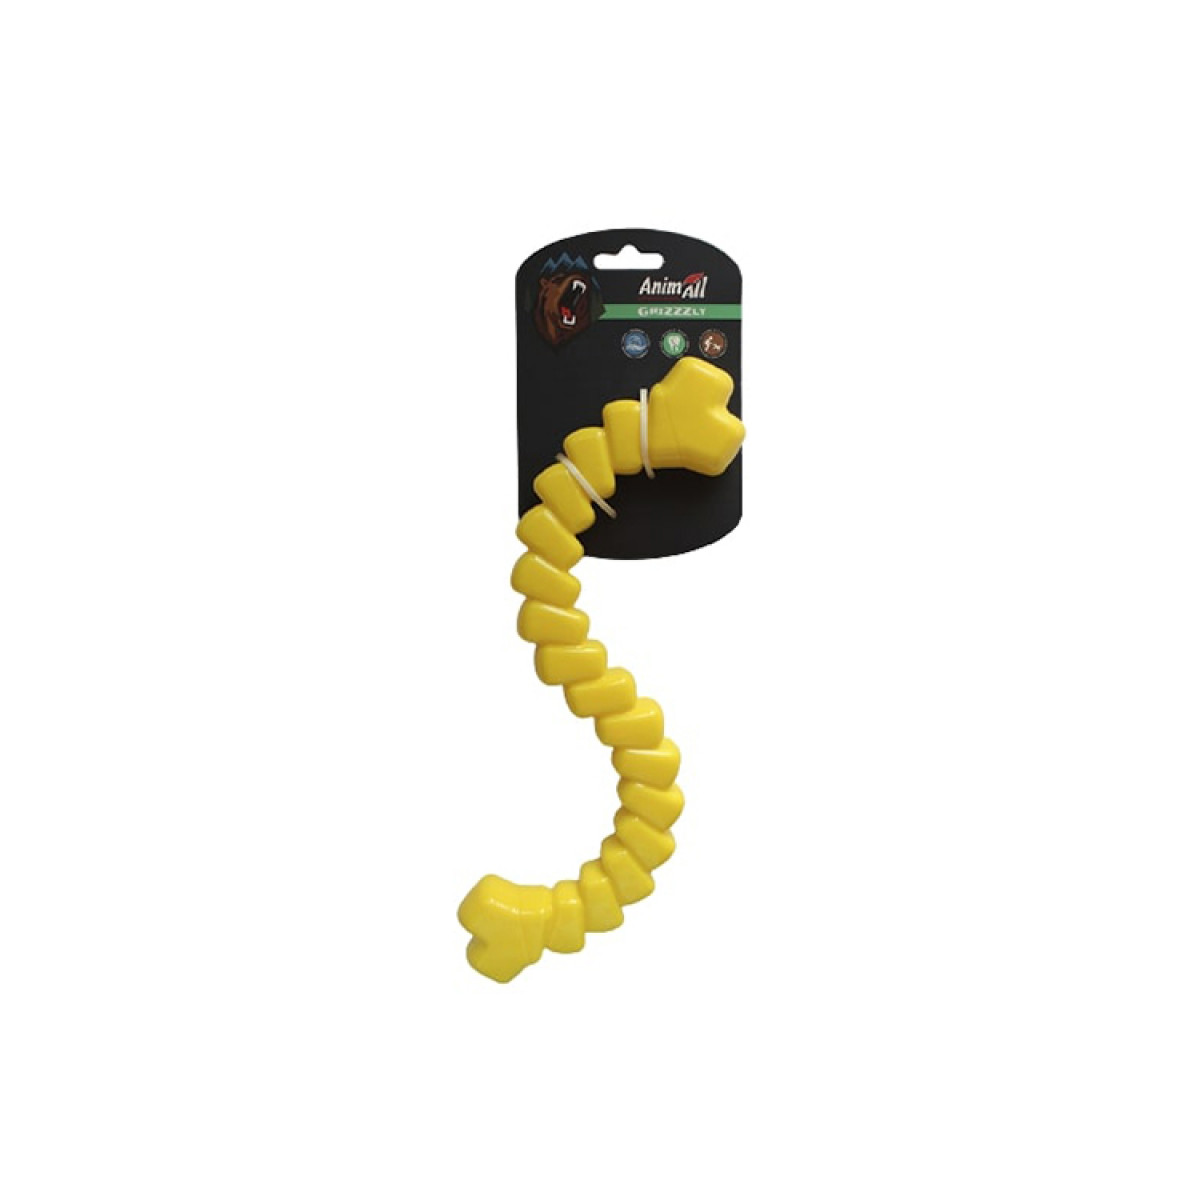 Іграшка-шнур для собак AnimAll AGrizZzly, жовтий - 2